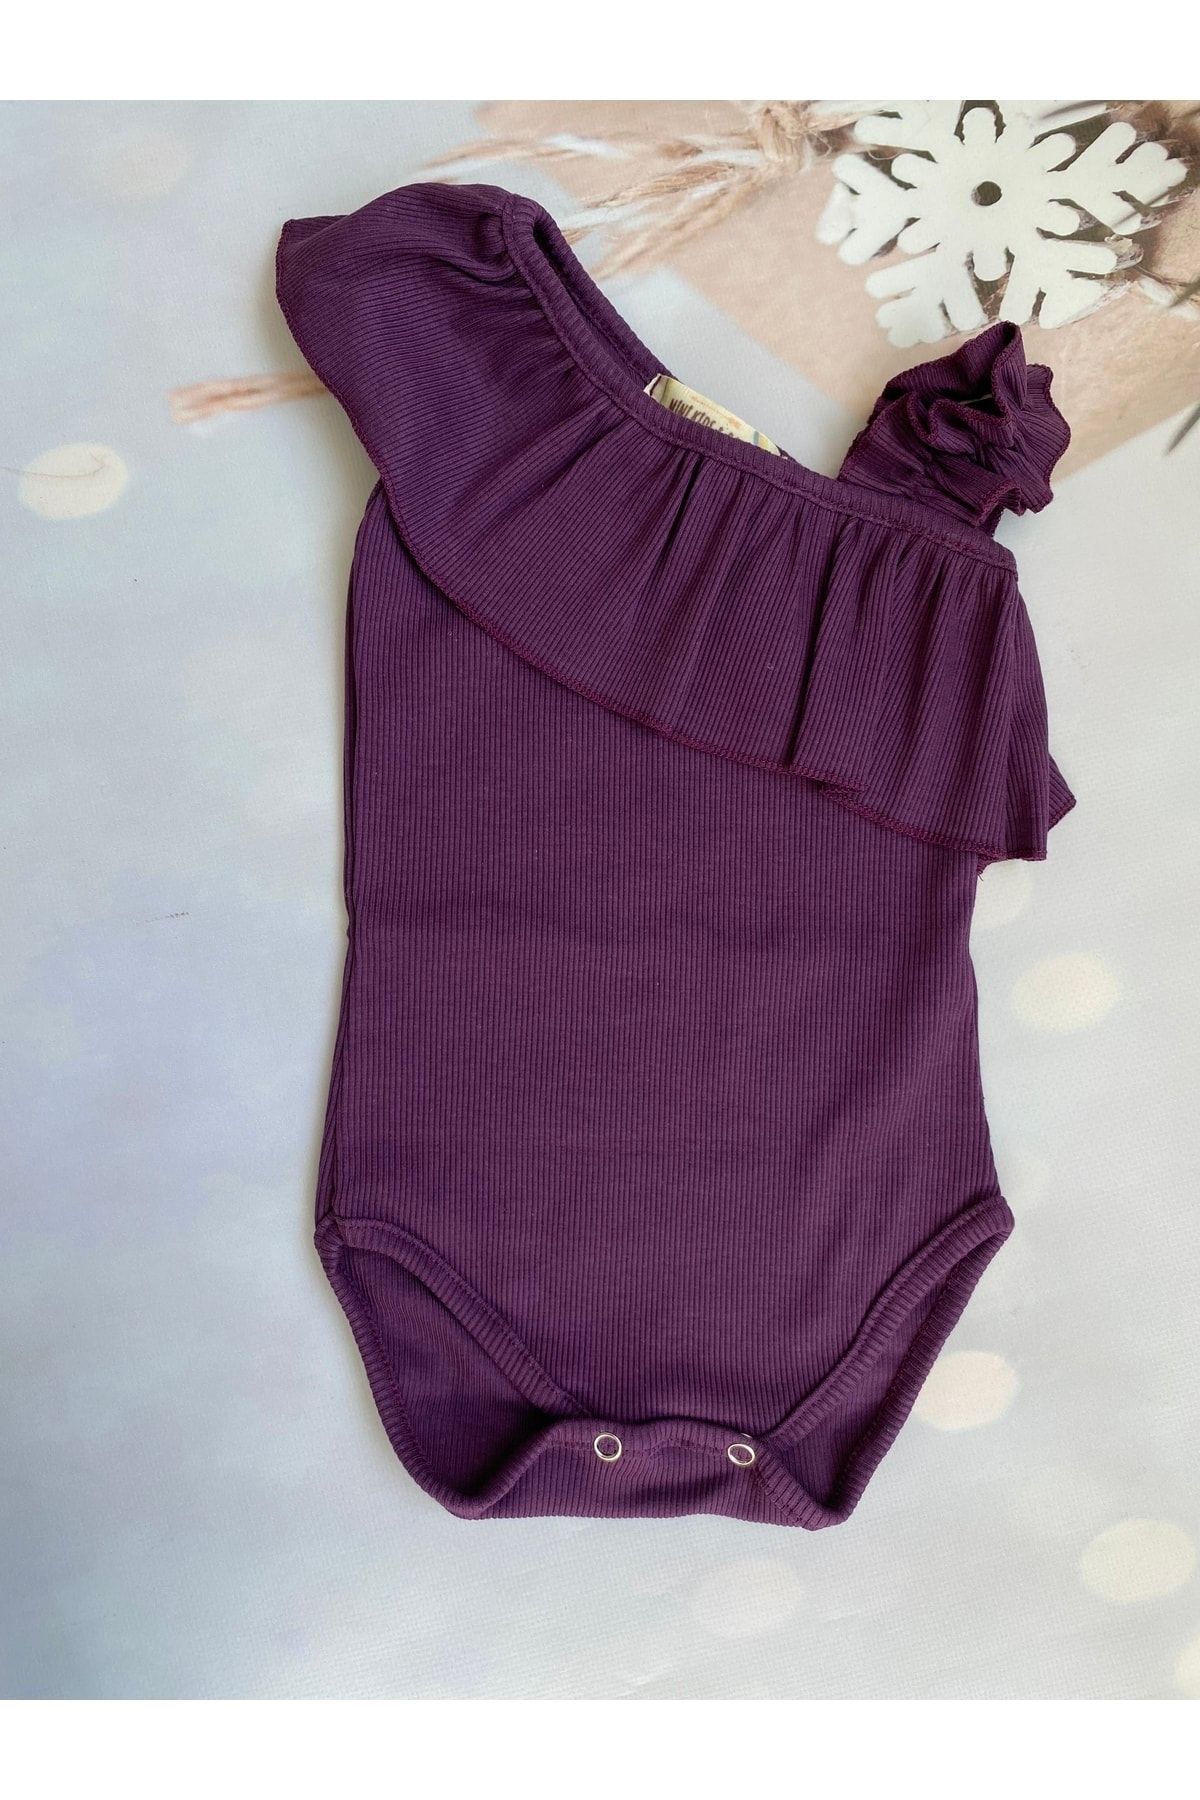 Mini Kids Baby Kız Bebek Mor Fırfırlı Tek Omuz Askılı Çıtçıtlı Body Zıbın